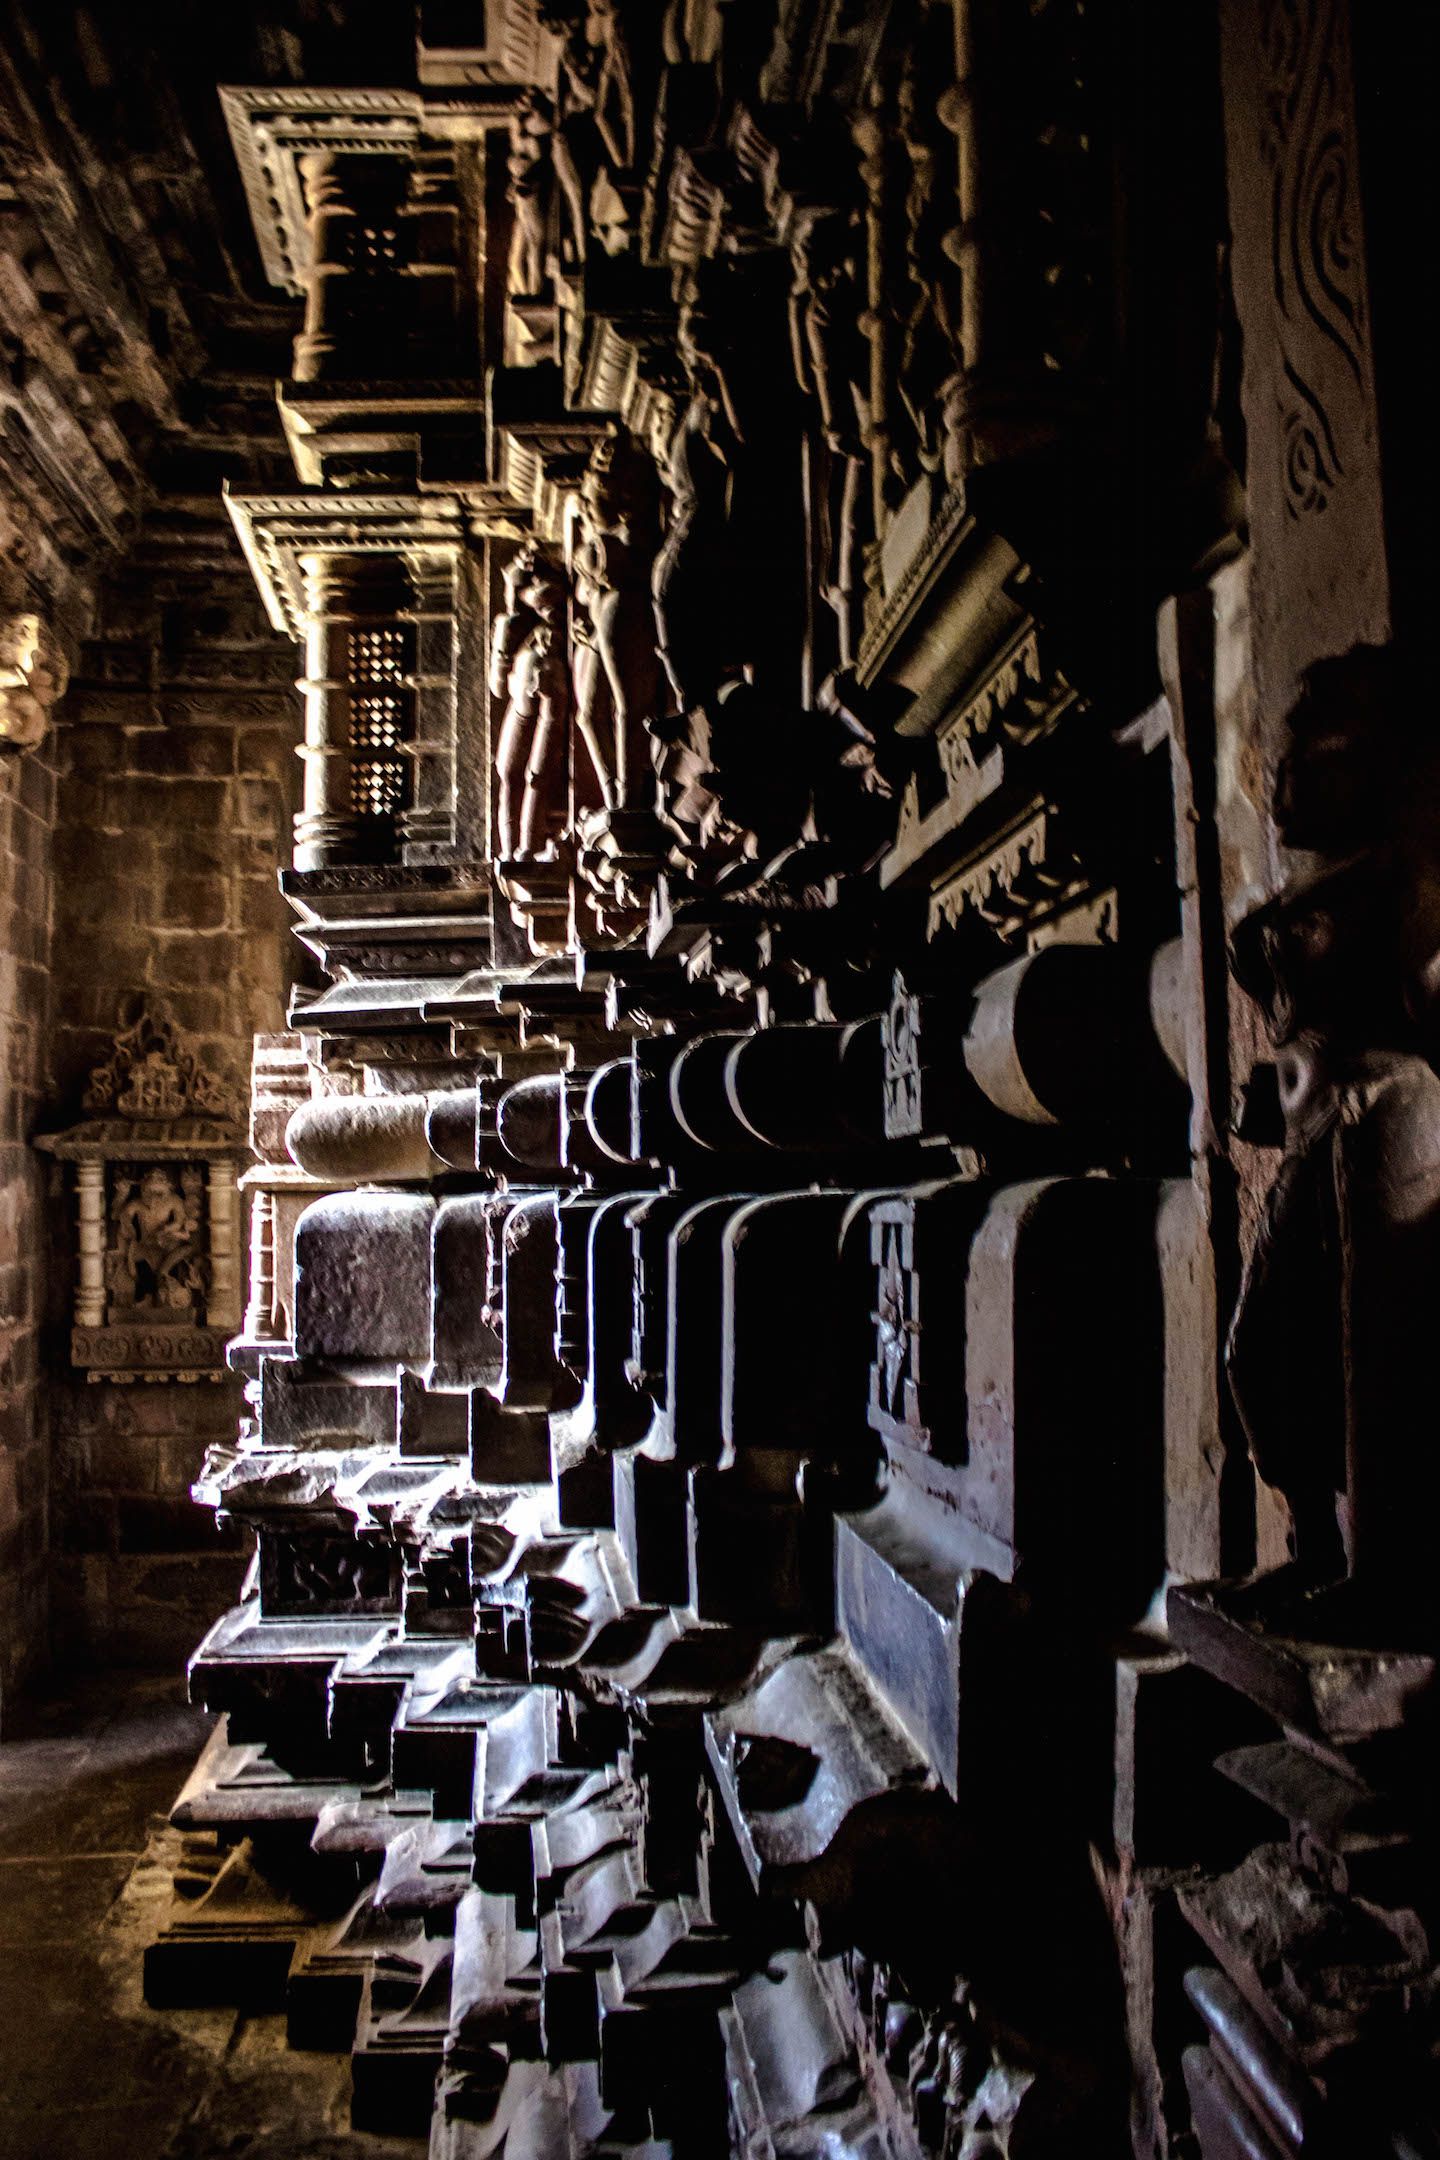 Symphony of lights at the inner chambers of Kandariya-Mahadev temple, Khajuraho, India